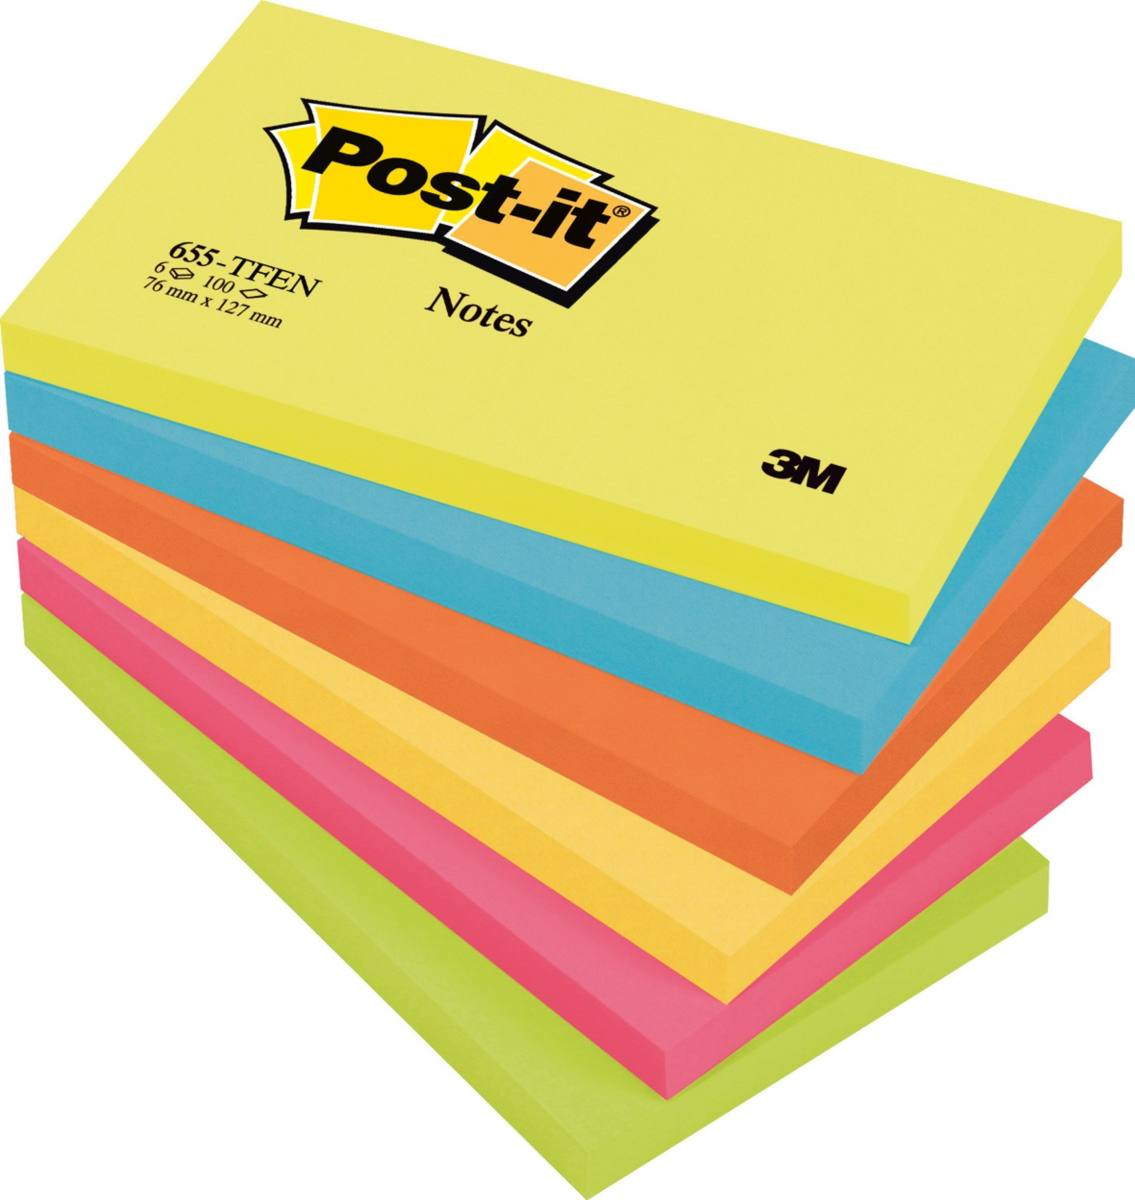 3M Post-it Notes 655TFEN, 127 x 76 mm, vert fluo, orange fluo, bleu ultra, jaune ultra, rose ultra, 6 blocs de 100 feuilles